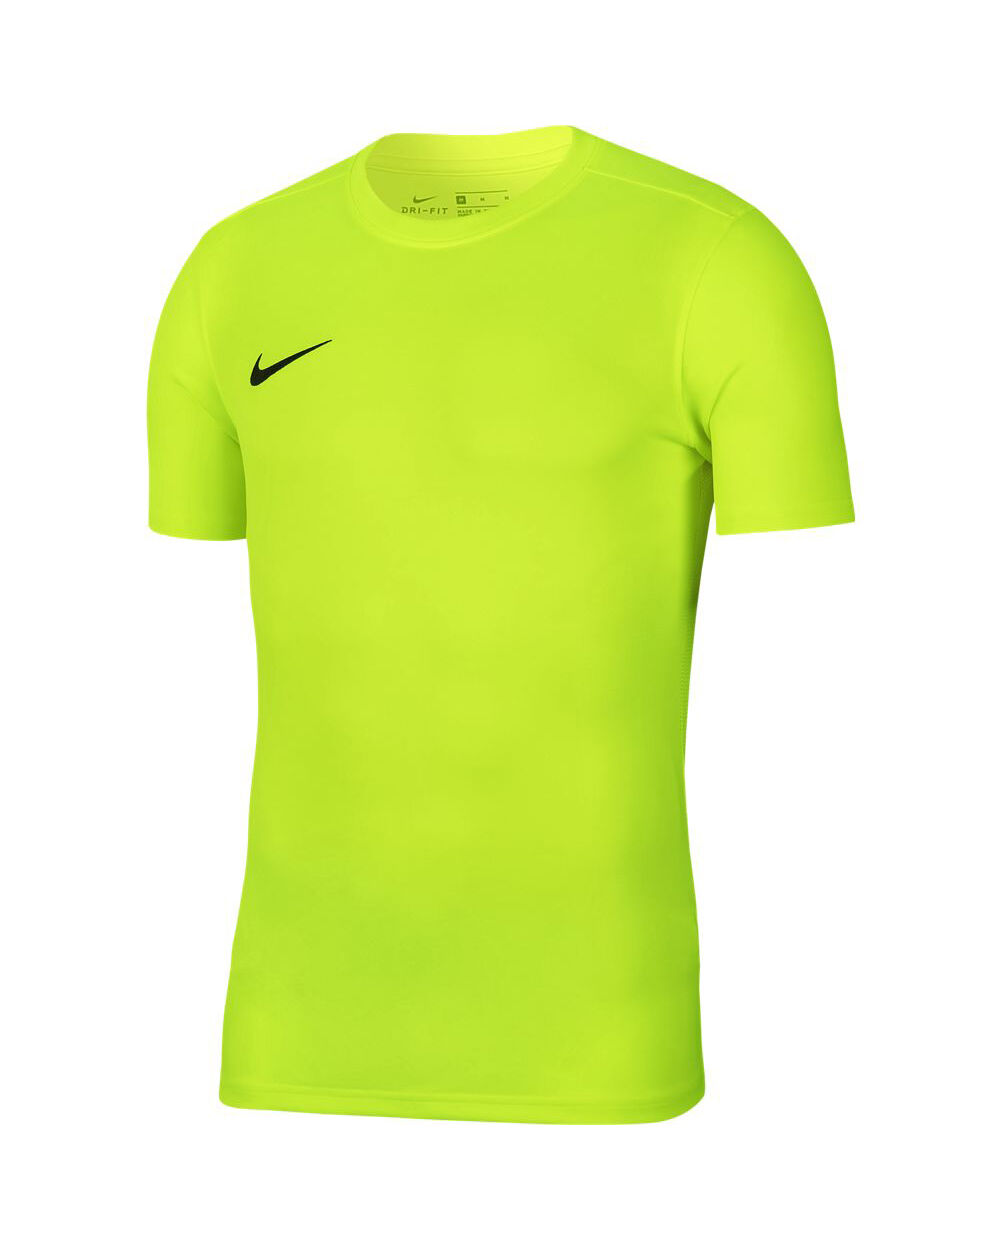 Nike Maglia Park VII Giallo Fluorescente Bambino BV6741-702 M